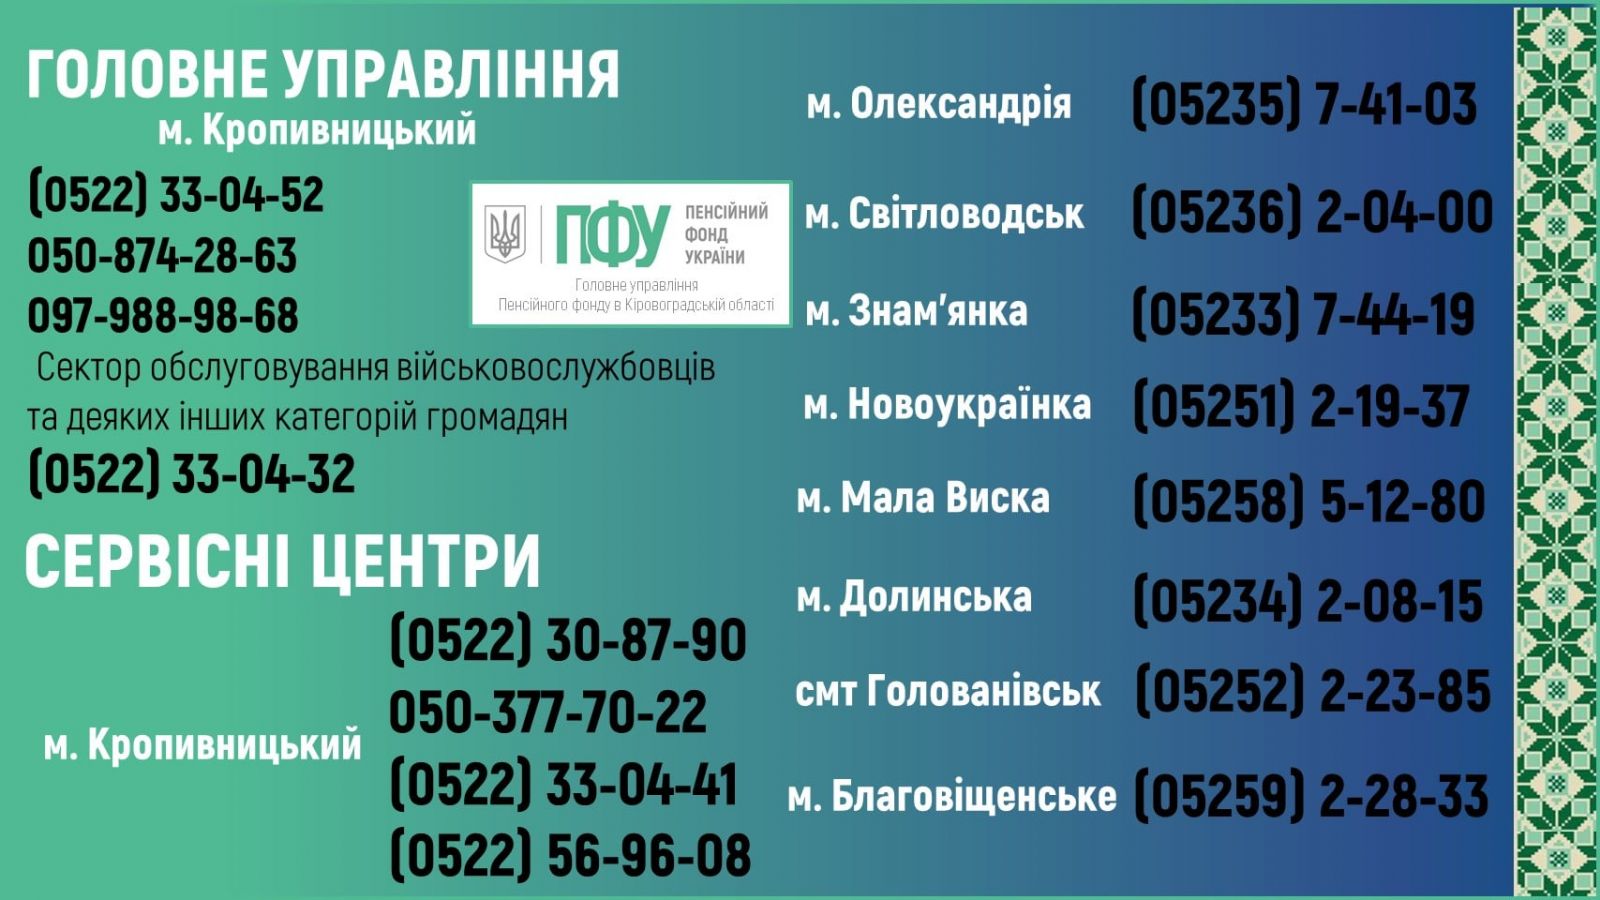 Пенсійний фонд України в Кіровоградській області - контакти